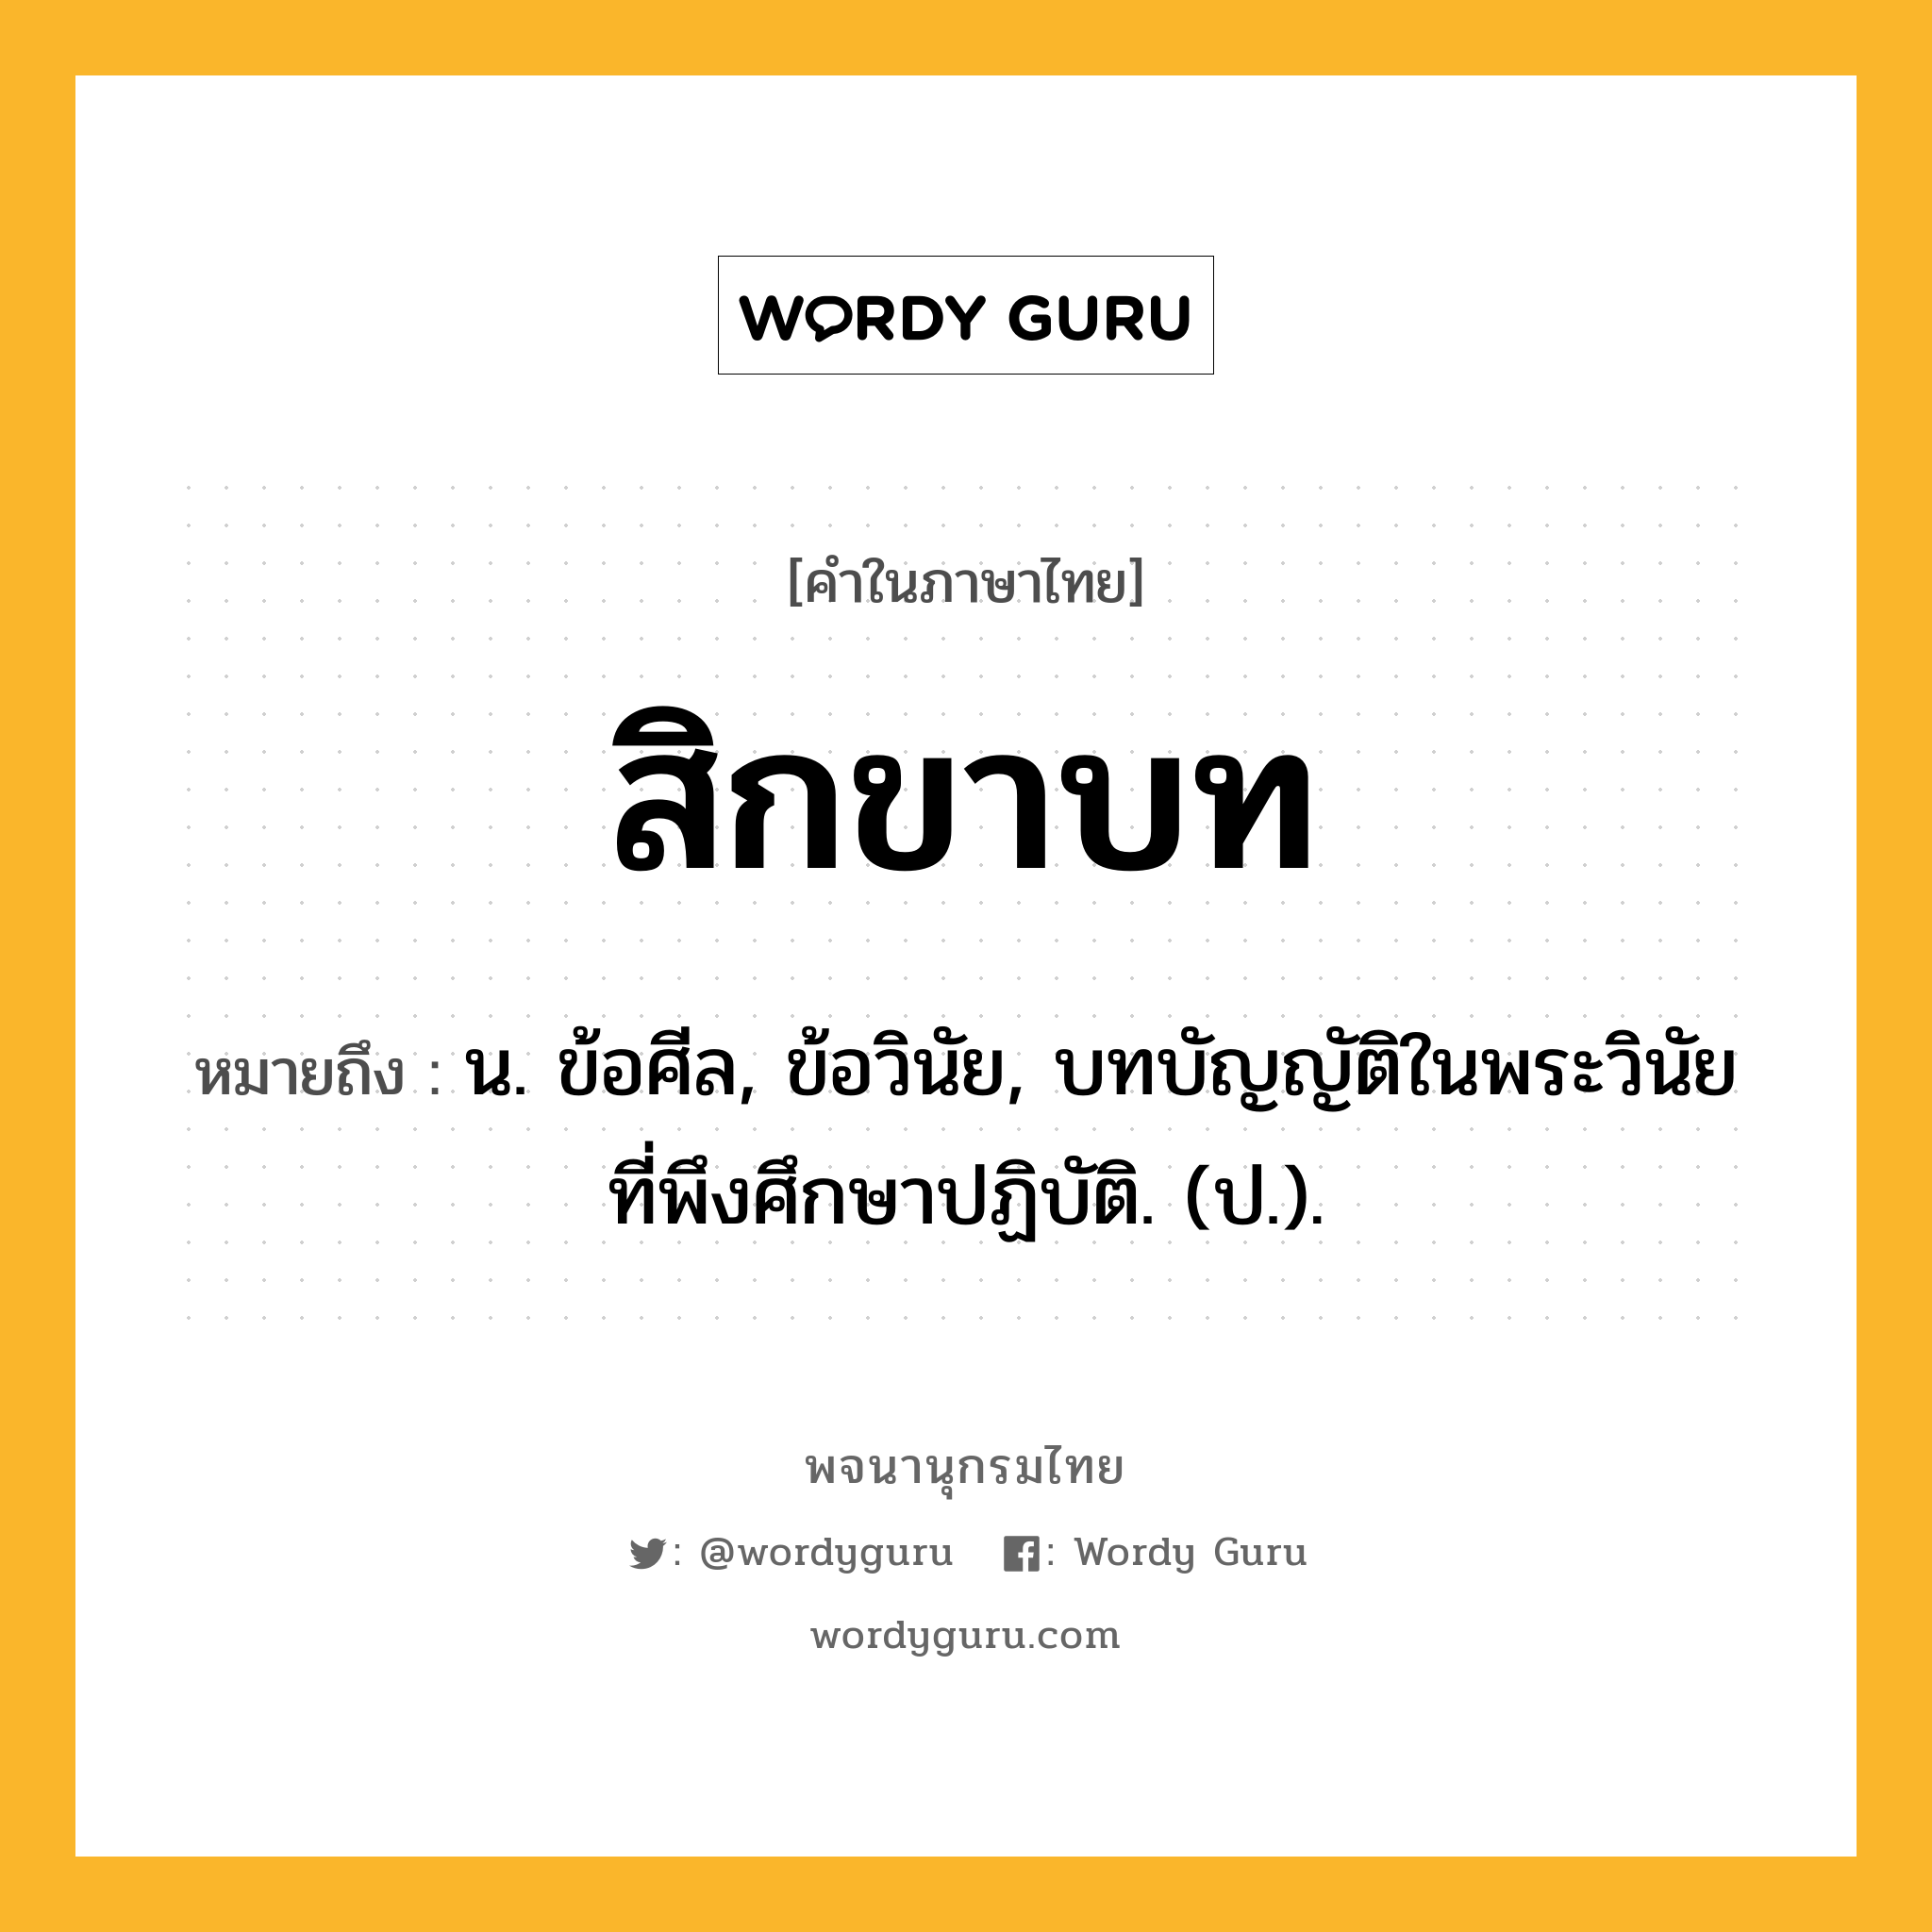 สิกขาบท ความหมาย หมายถึงอะไร?, คำในภาษาไทย สิกขาบท หมายถึง น. ข้อศีล, ข้อวินัย, บทบัญญัติในพระวินัยที่พึงศึกษาปฏิบัติ. (ป.).